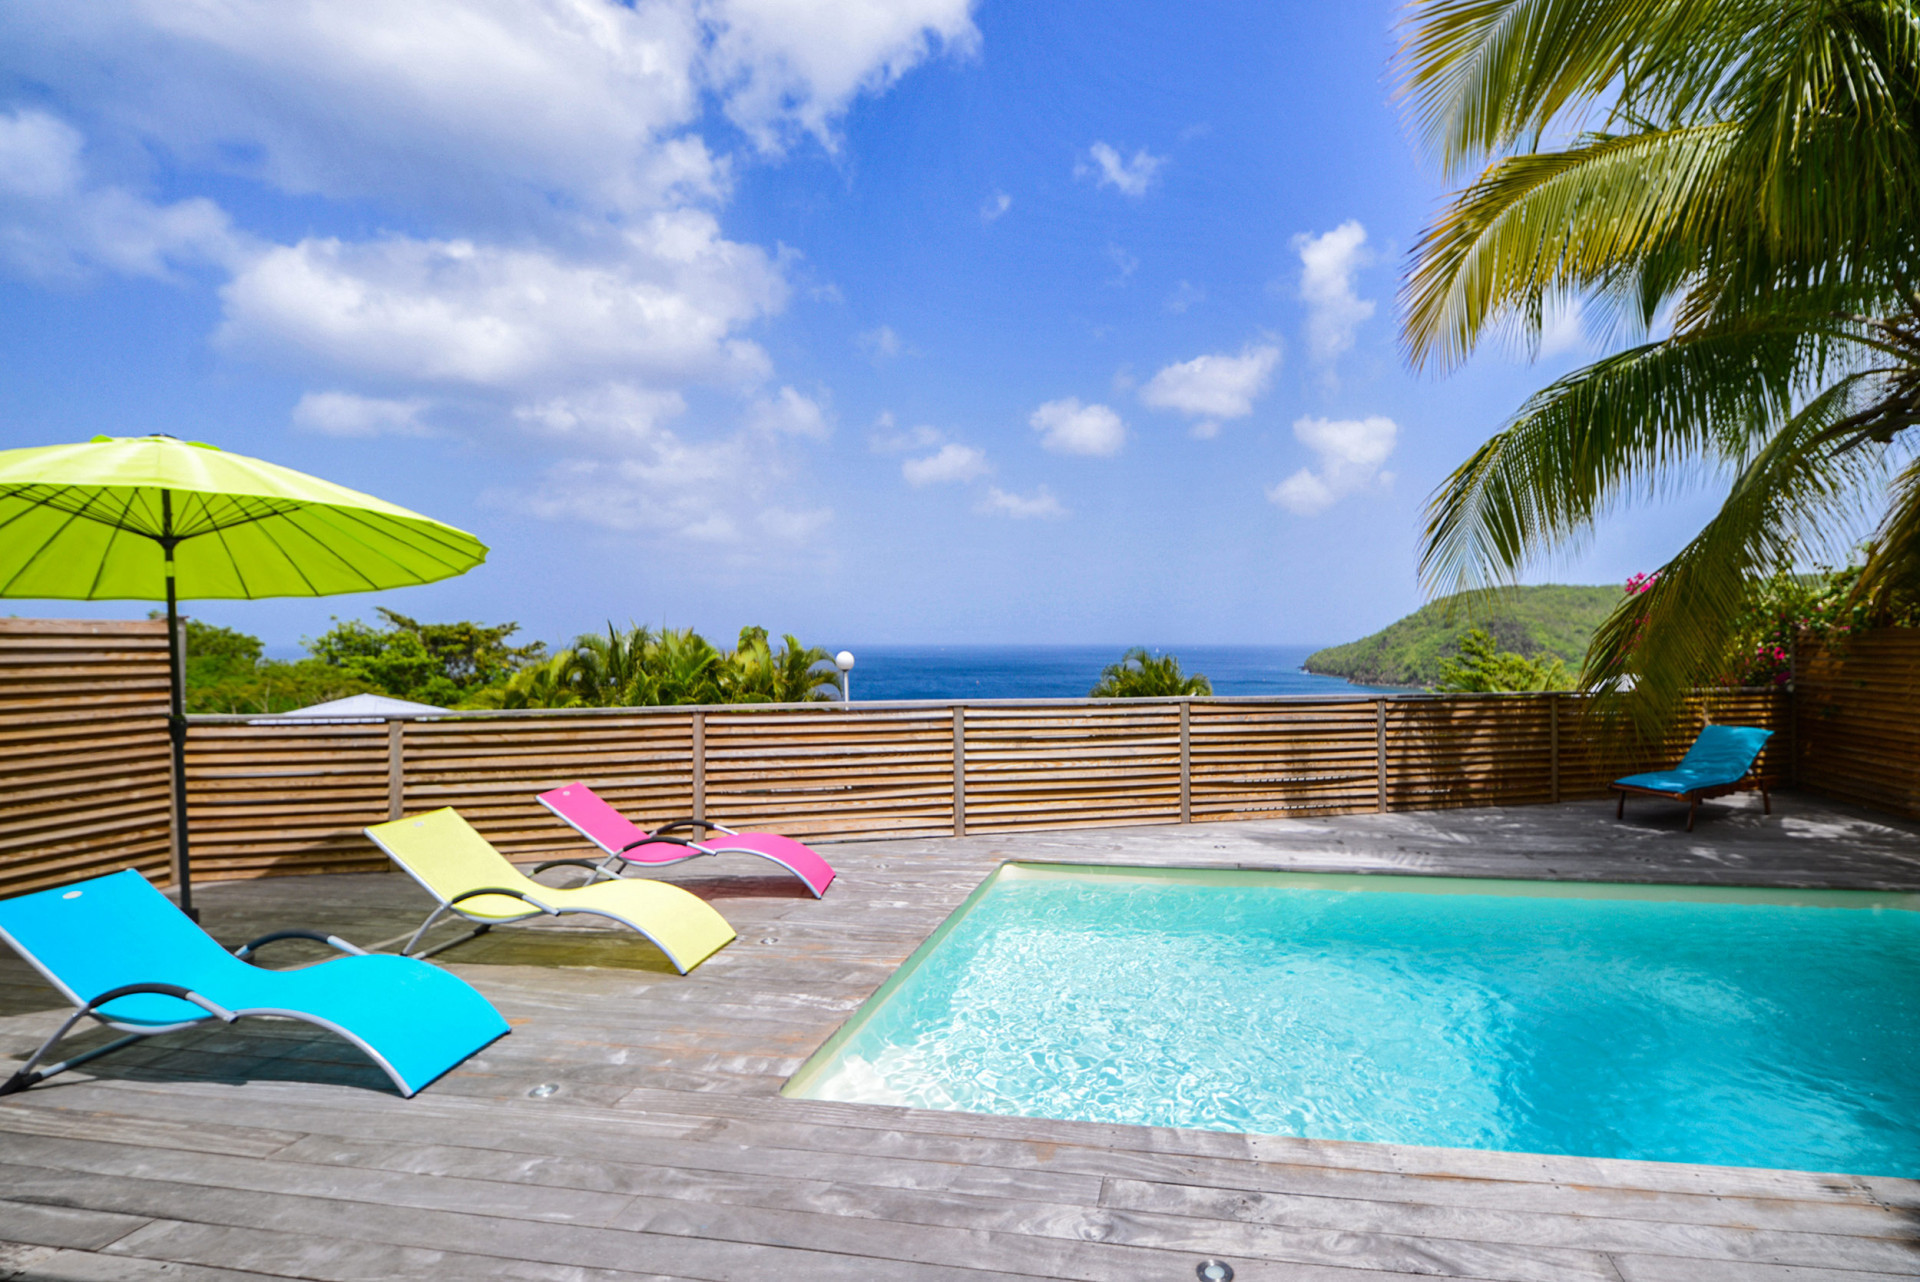 BOIS MARINE accommodation Anses d'Arlet rental Martinique pool sea view - Bienvenue à Bois Marine